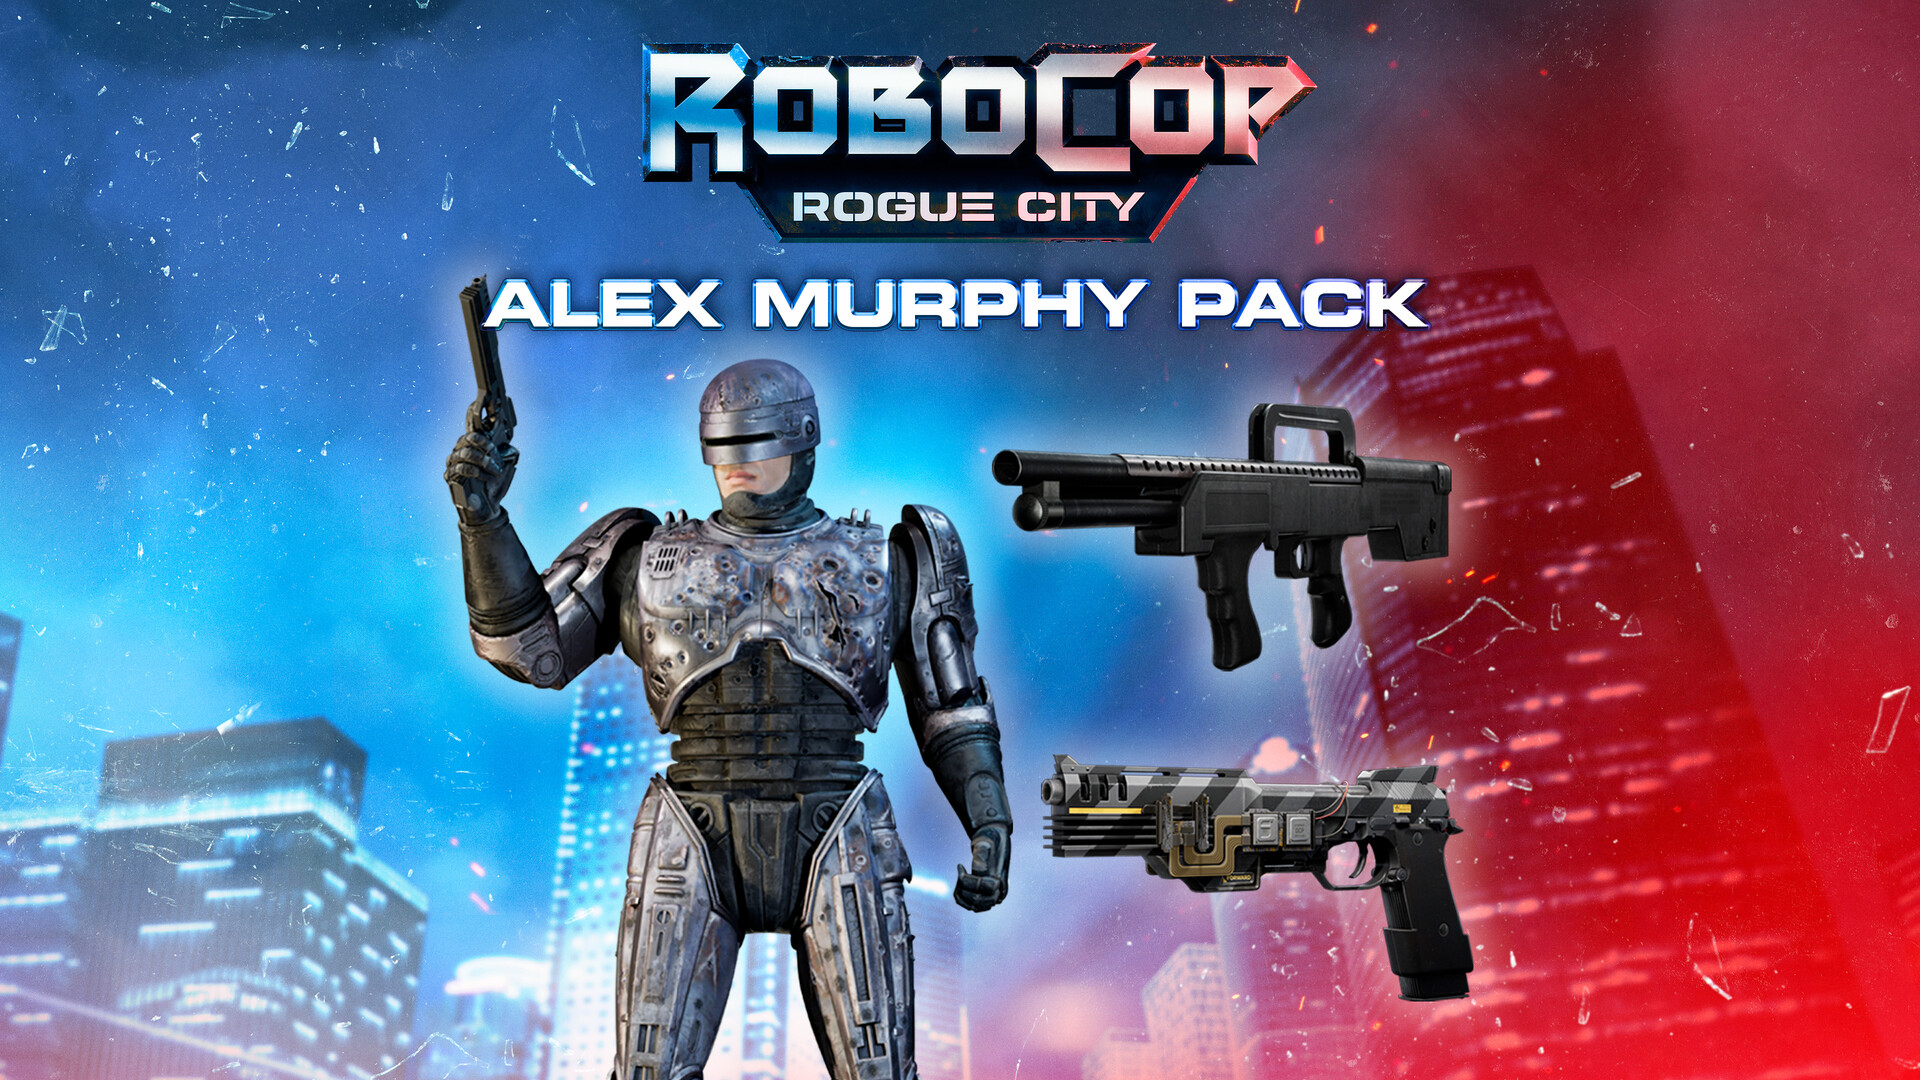 RoboCop: Rogue City - Alex Murphy Pack Featured Screenshot #1